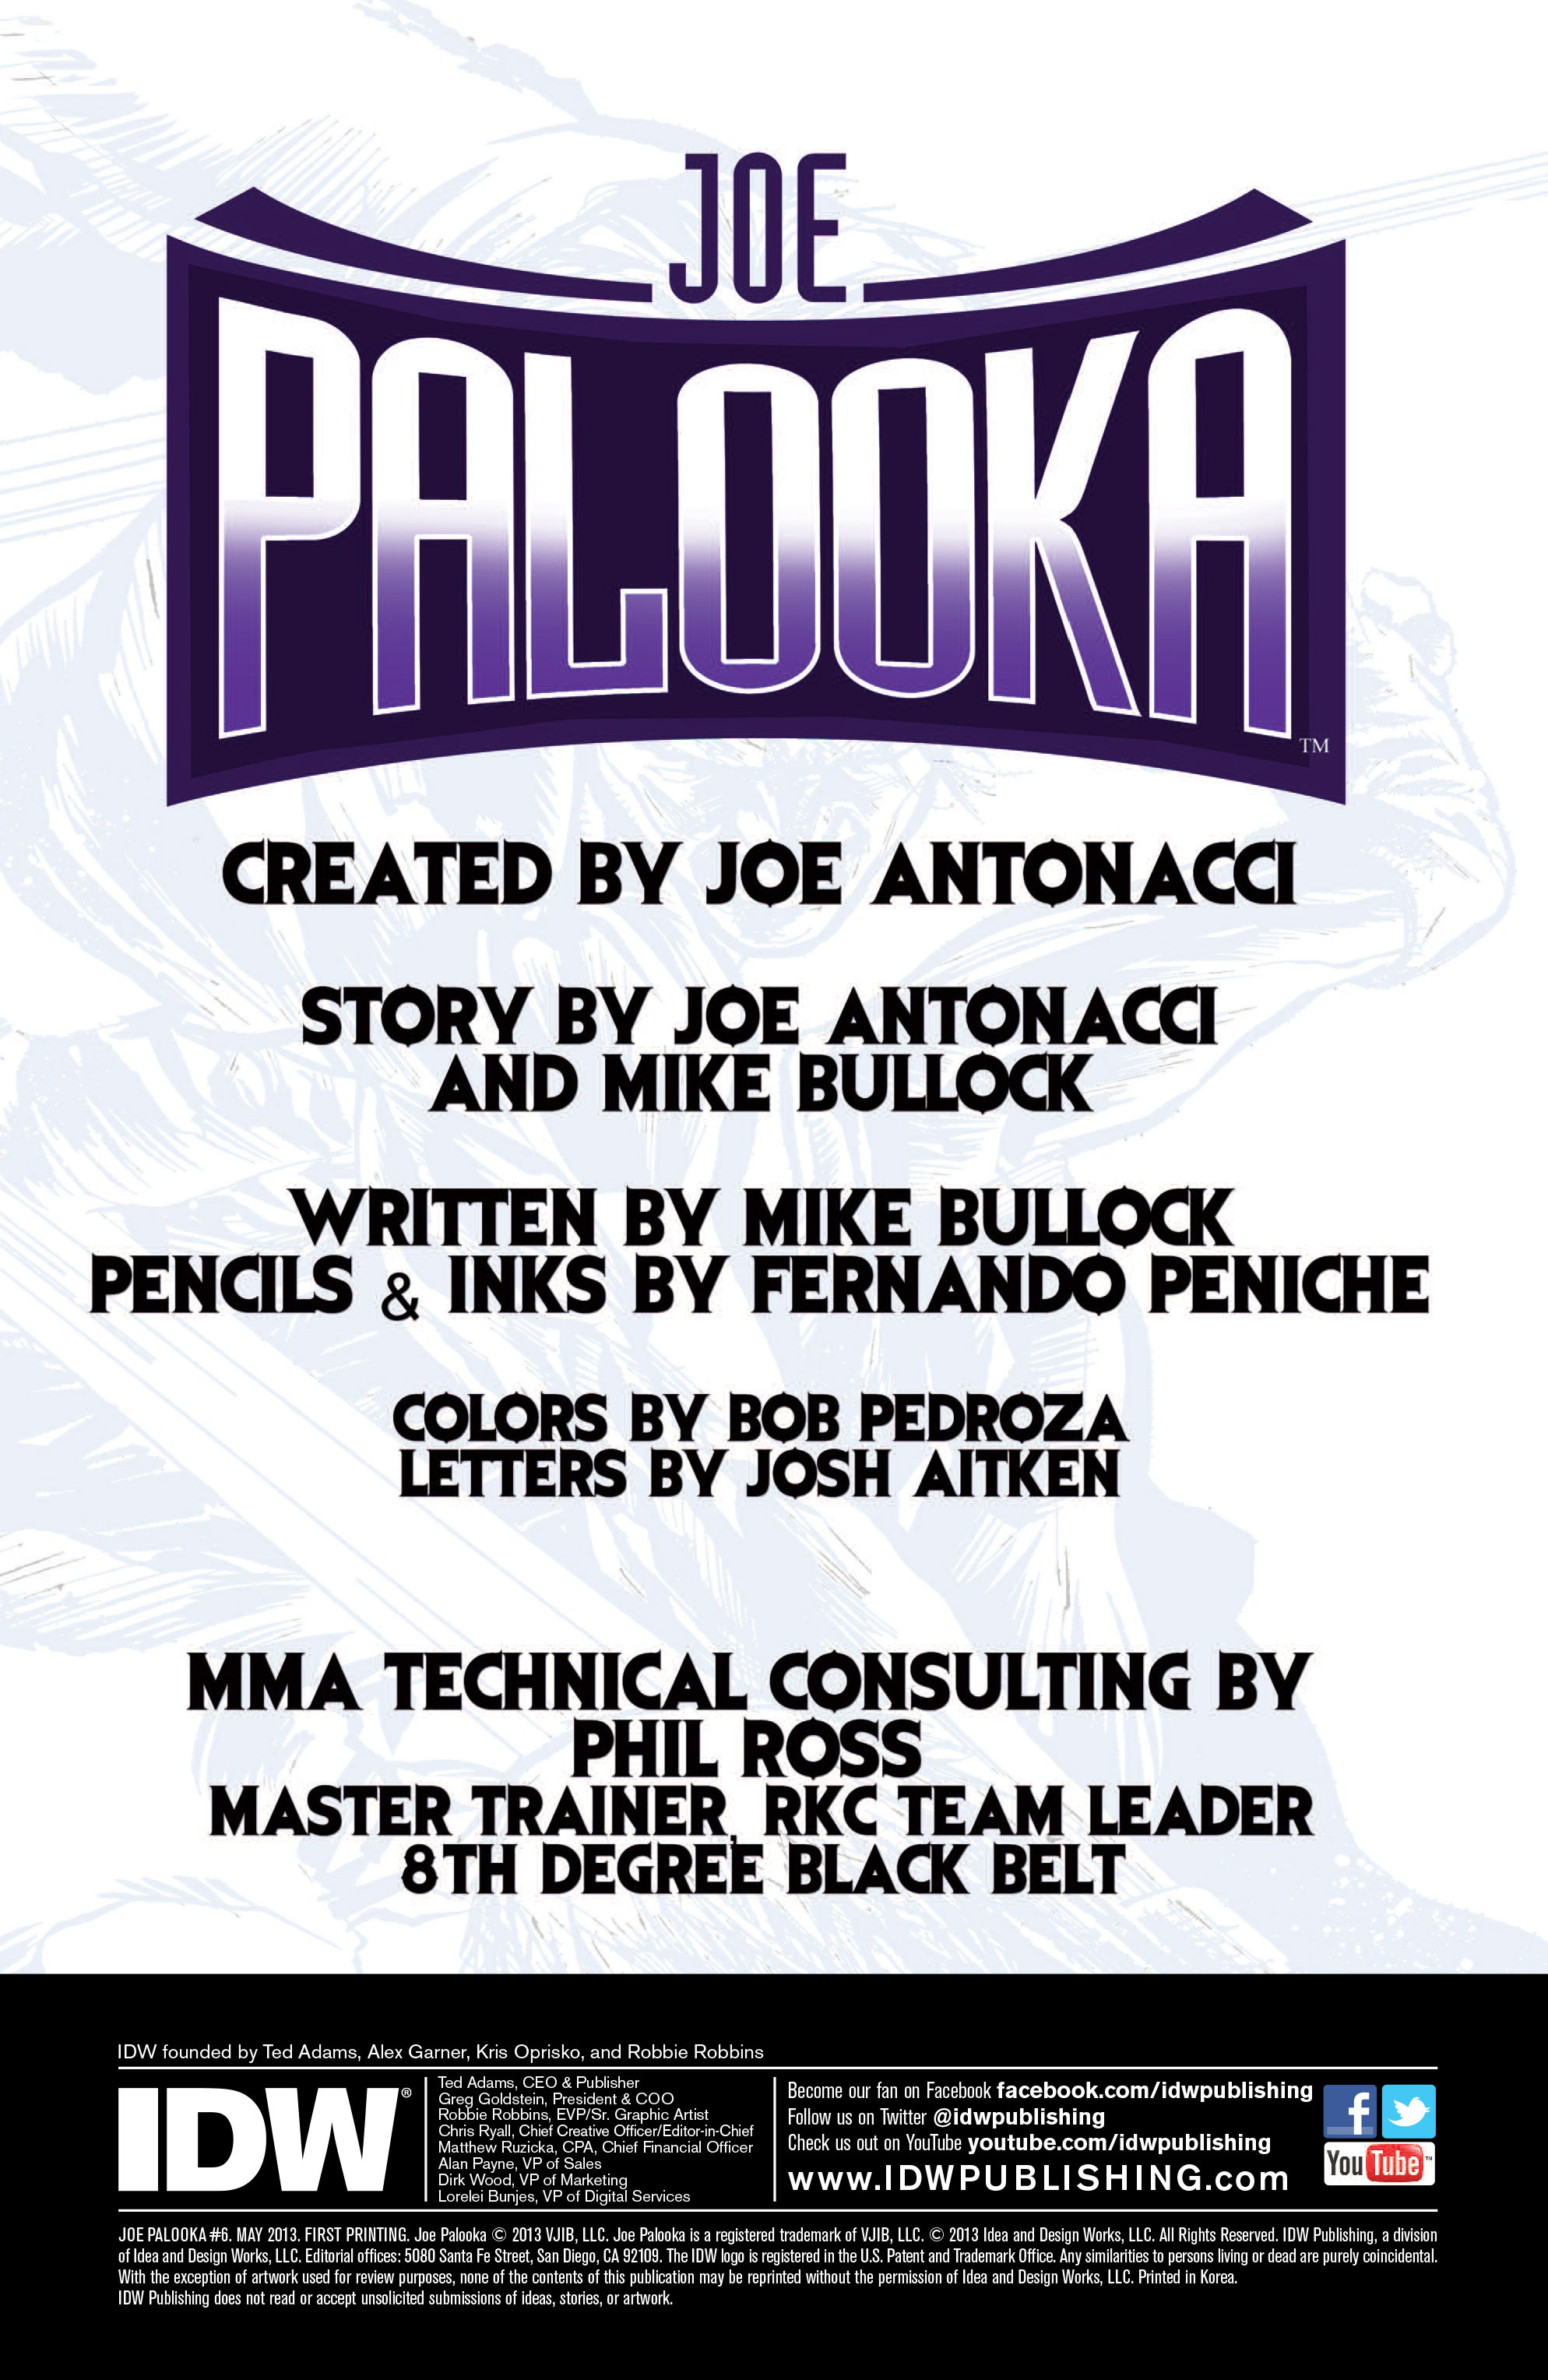 Read online Joe Palooka comic -  Issue #6 - 2